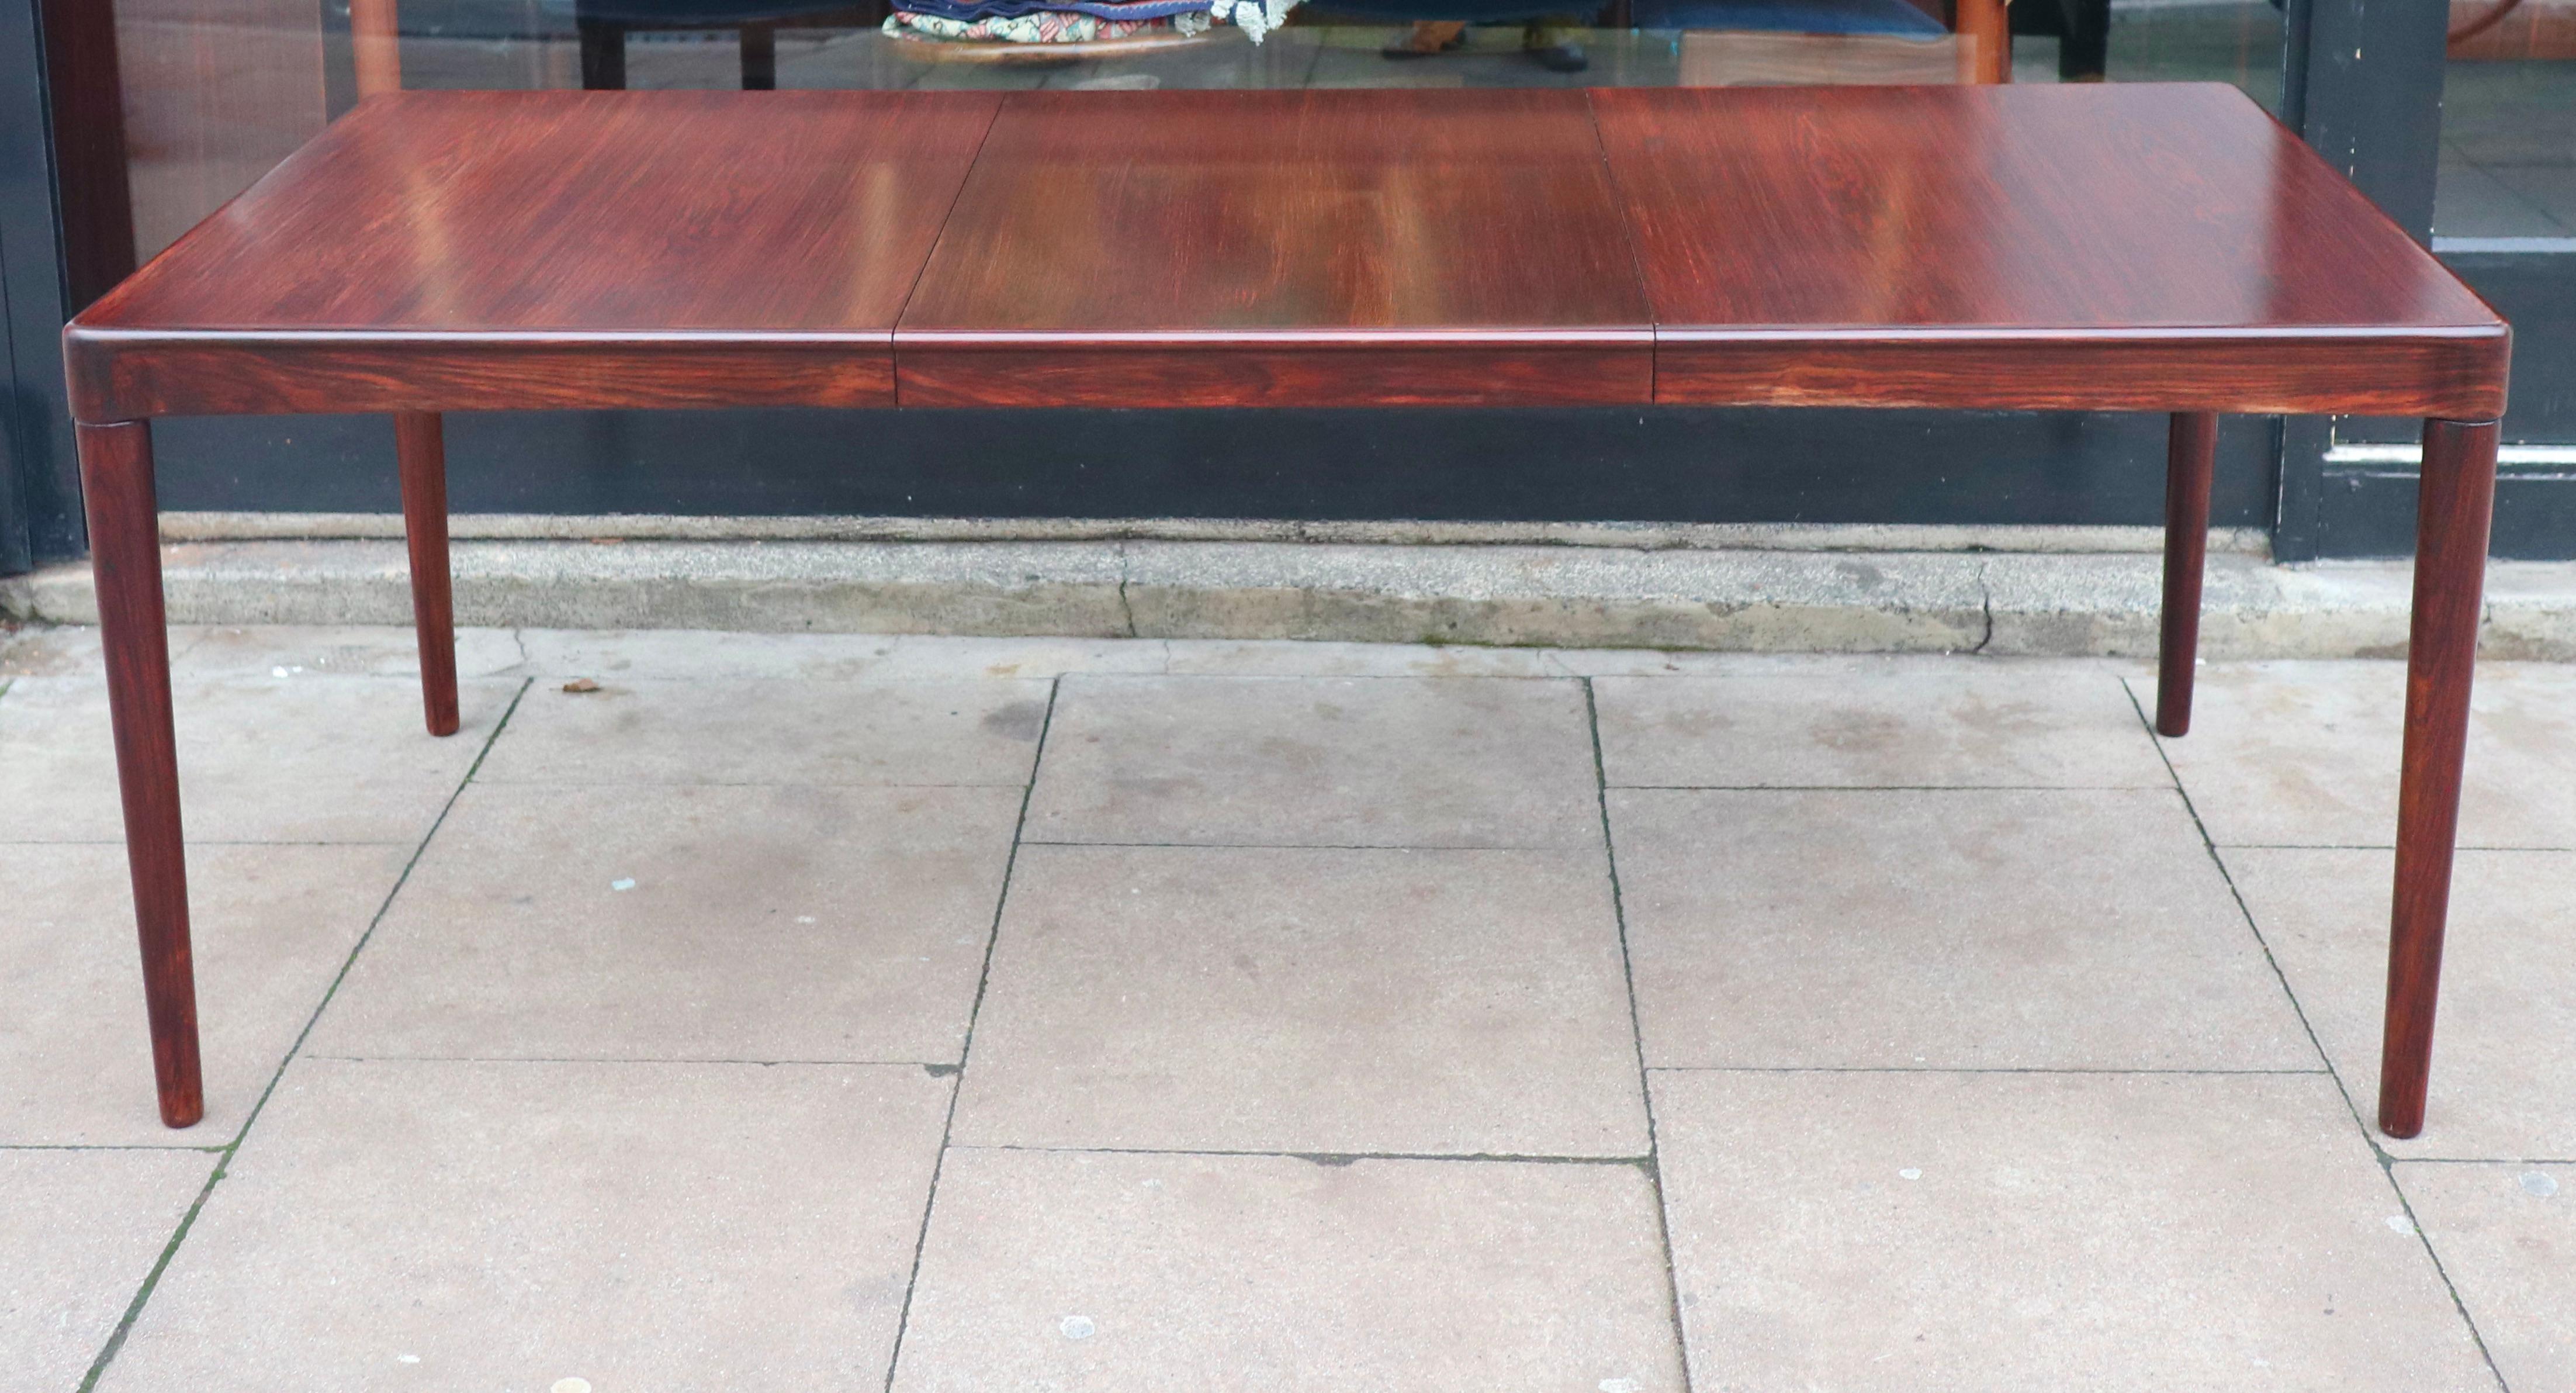 Très belle, rare et élégante table de salle à manger danoise des années 1970, rectangulaire, en palissandre, à rallonge, posée sur des pieds fuselés en palissandre massif. Cette table a été conçue par HW Klein et produite par Bramin. Elle comprend